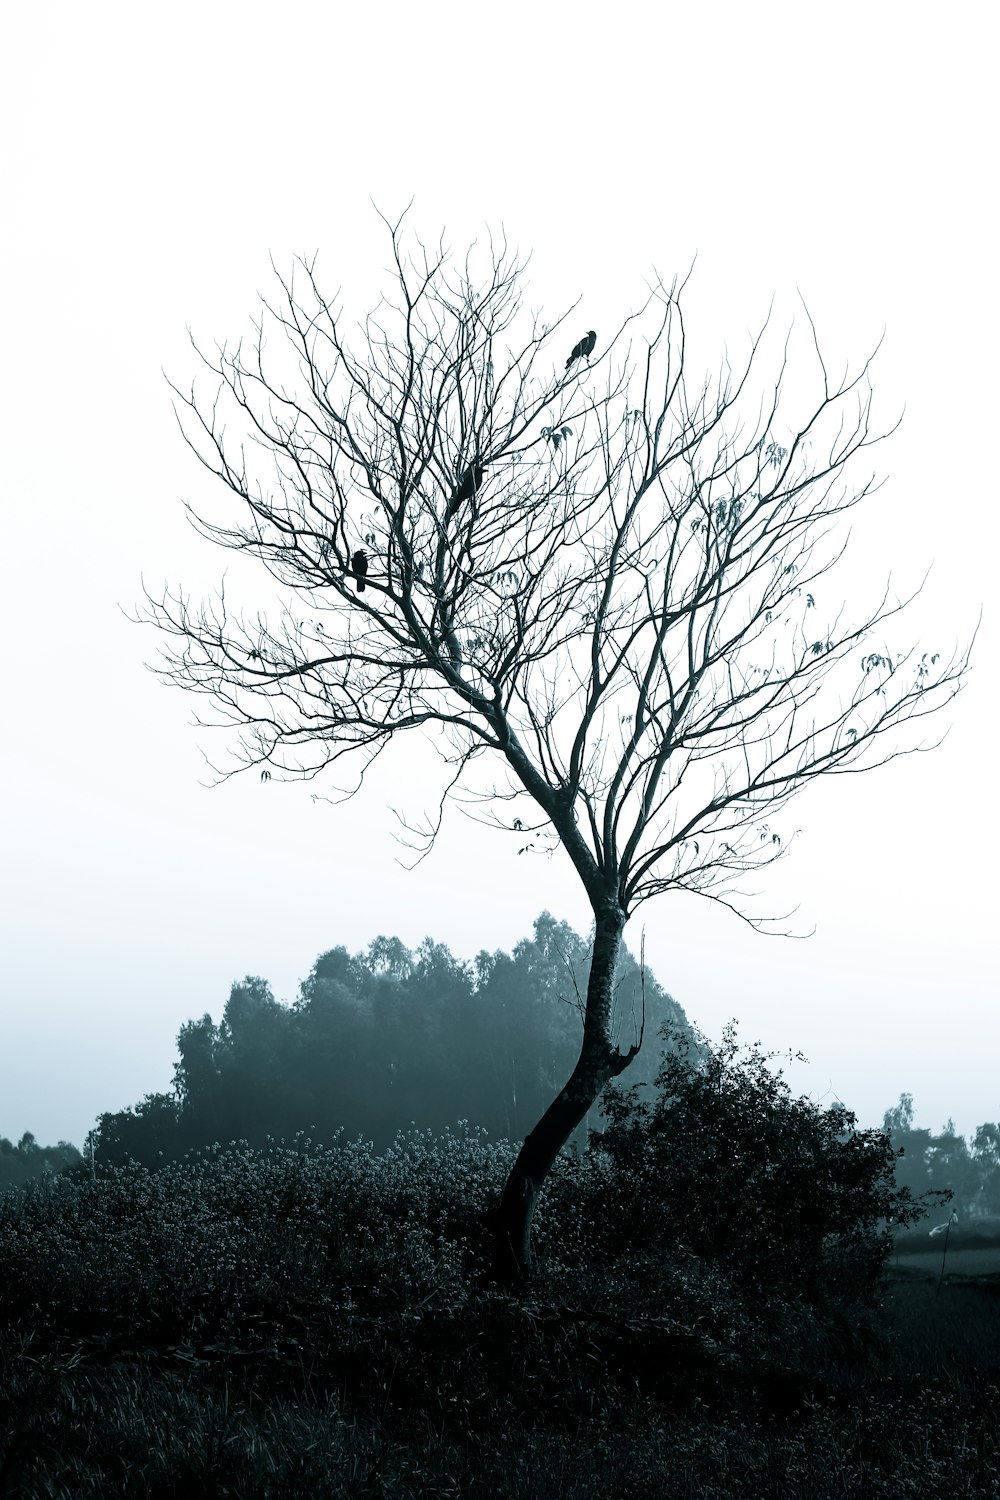 uma foto em preto e branco de uma árvore com um pássaro empoleirado nela